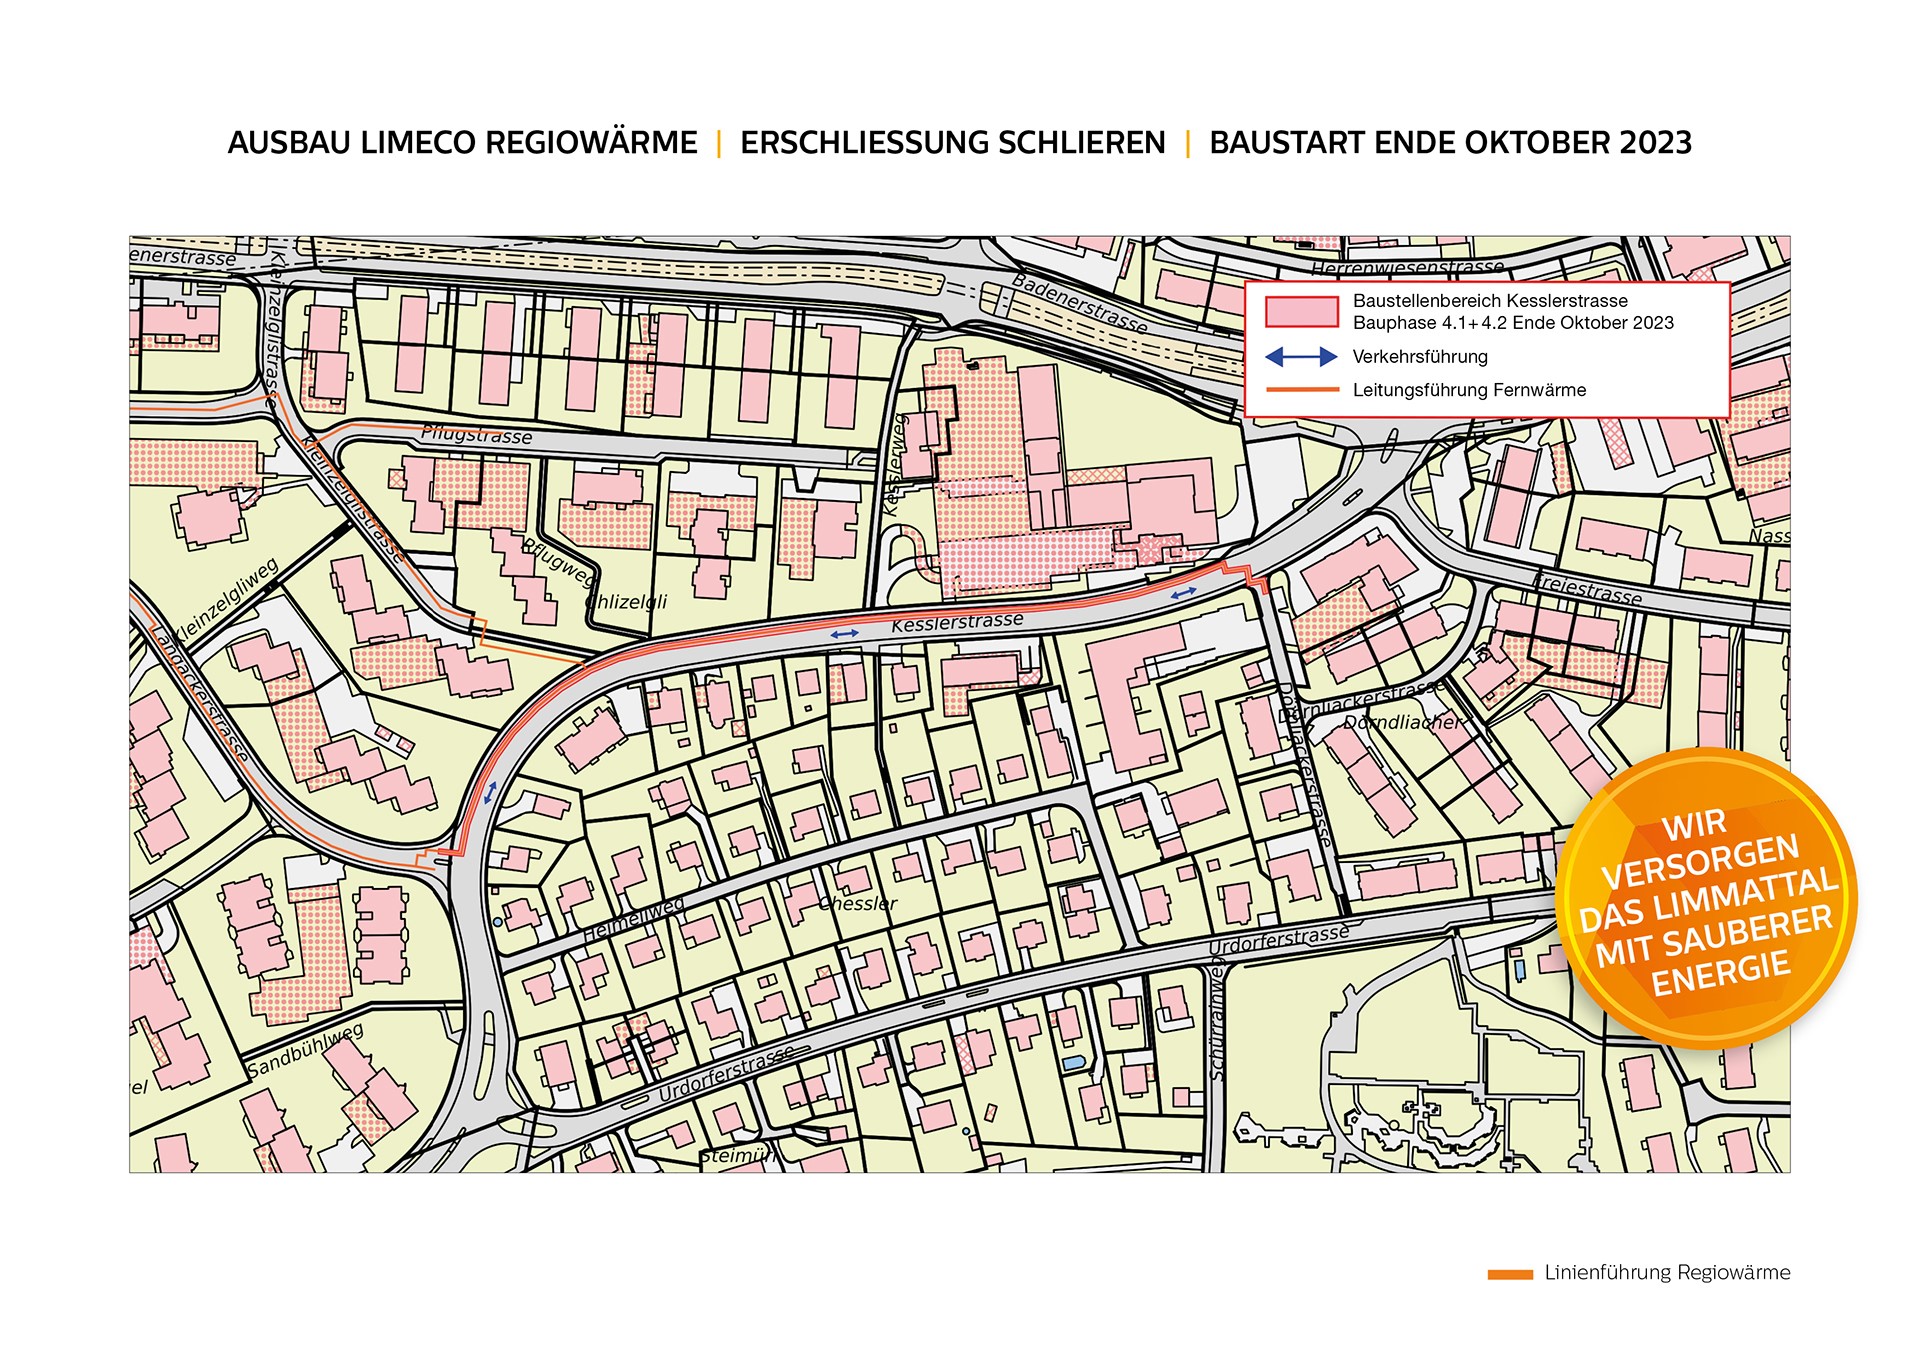 Das Bild zeigt den Stadtplan der Umgebung Kesslerstrasse und die Einzeichnung der Baustelle